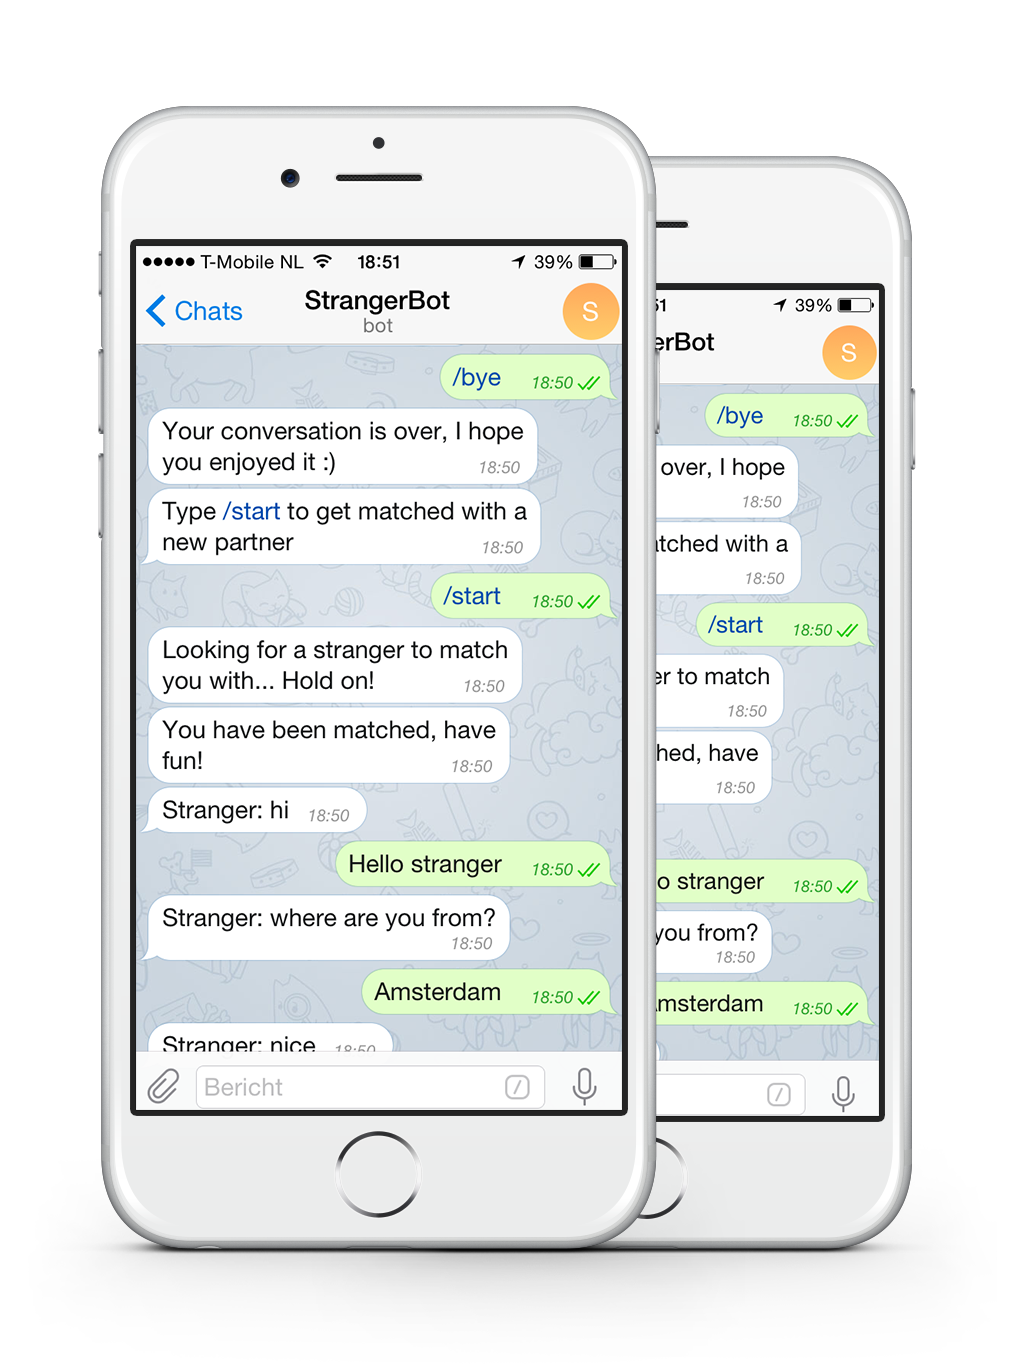 Знайомства Телеграм (Telegram): як знайти друзів і навіть більше в соціальній мережі